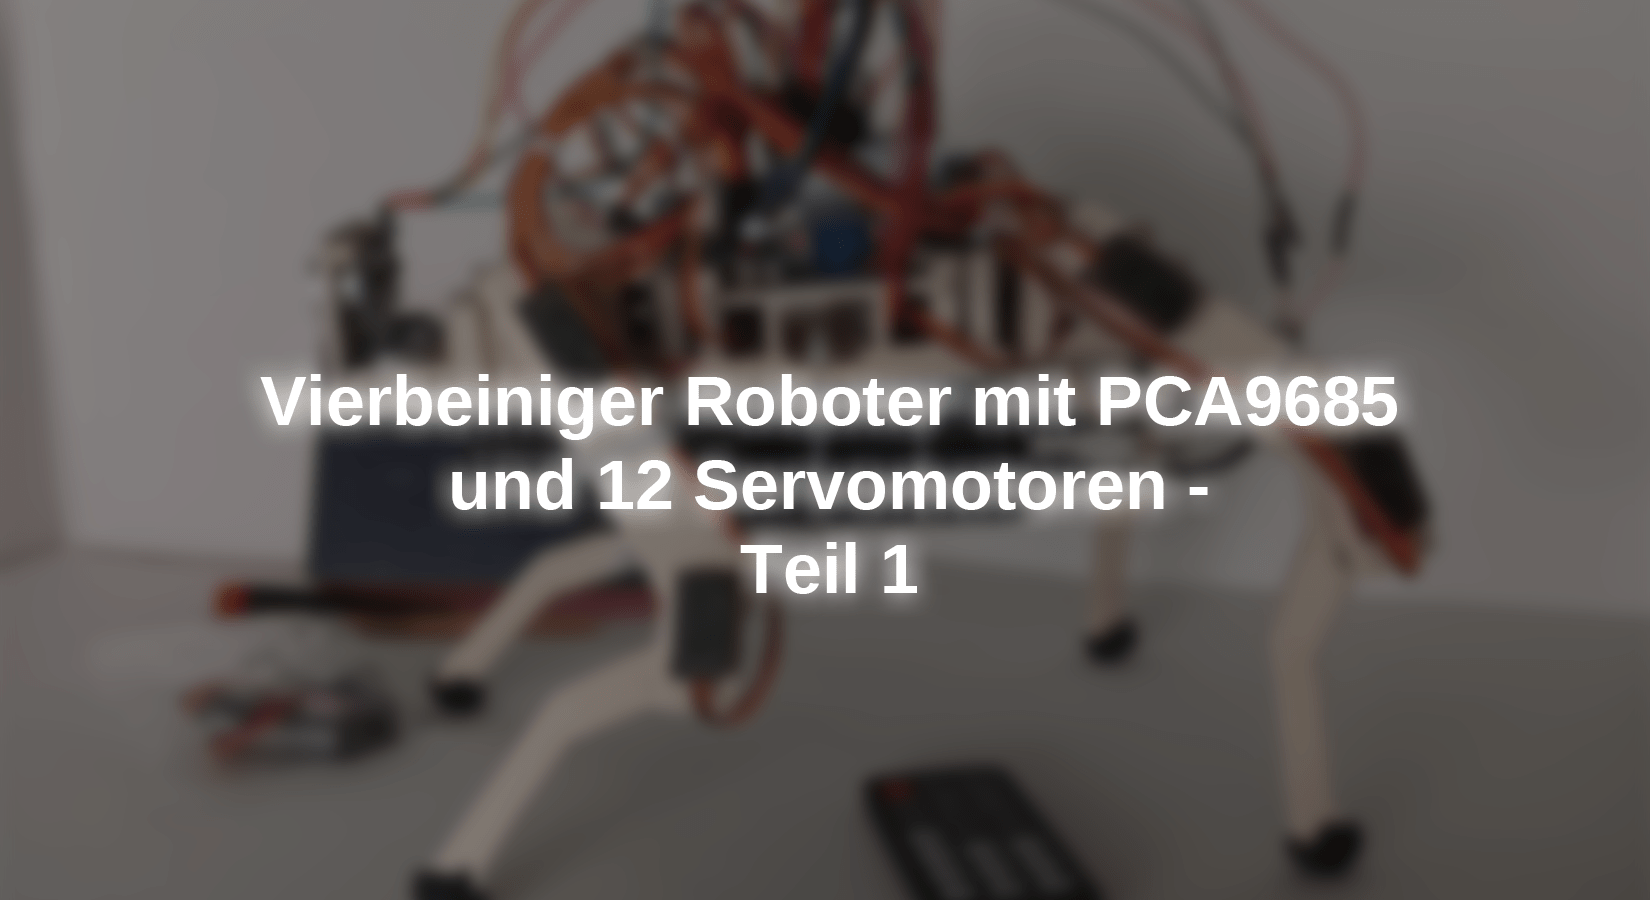 Vierbeiniger Roboter mit PCA9685 und 12 Servomotoren - Teil 1 - AZ-Delivery